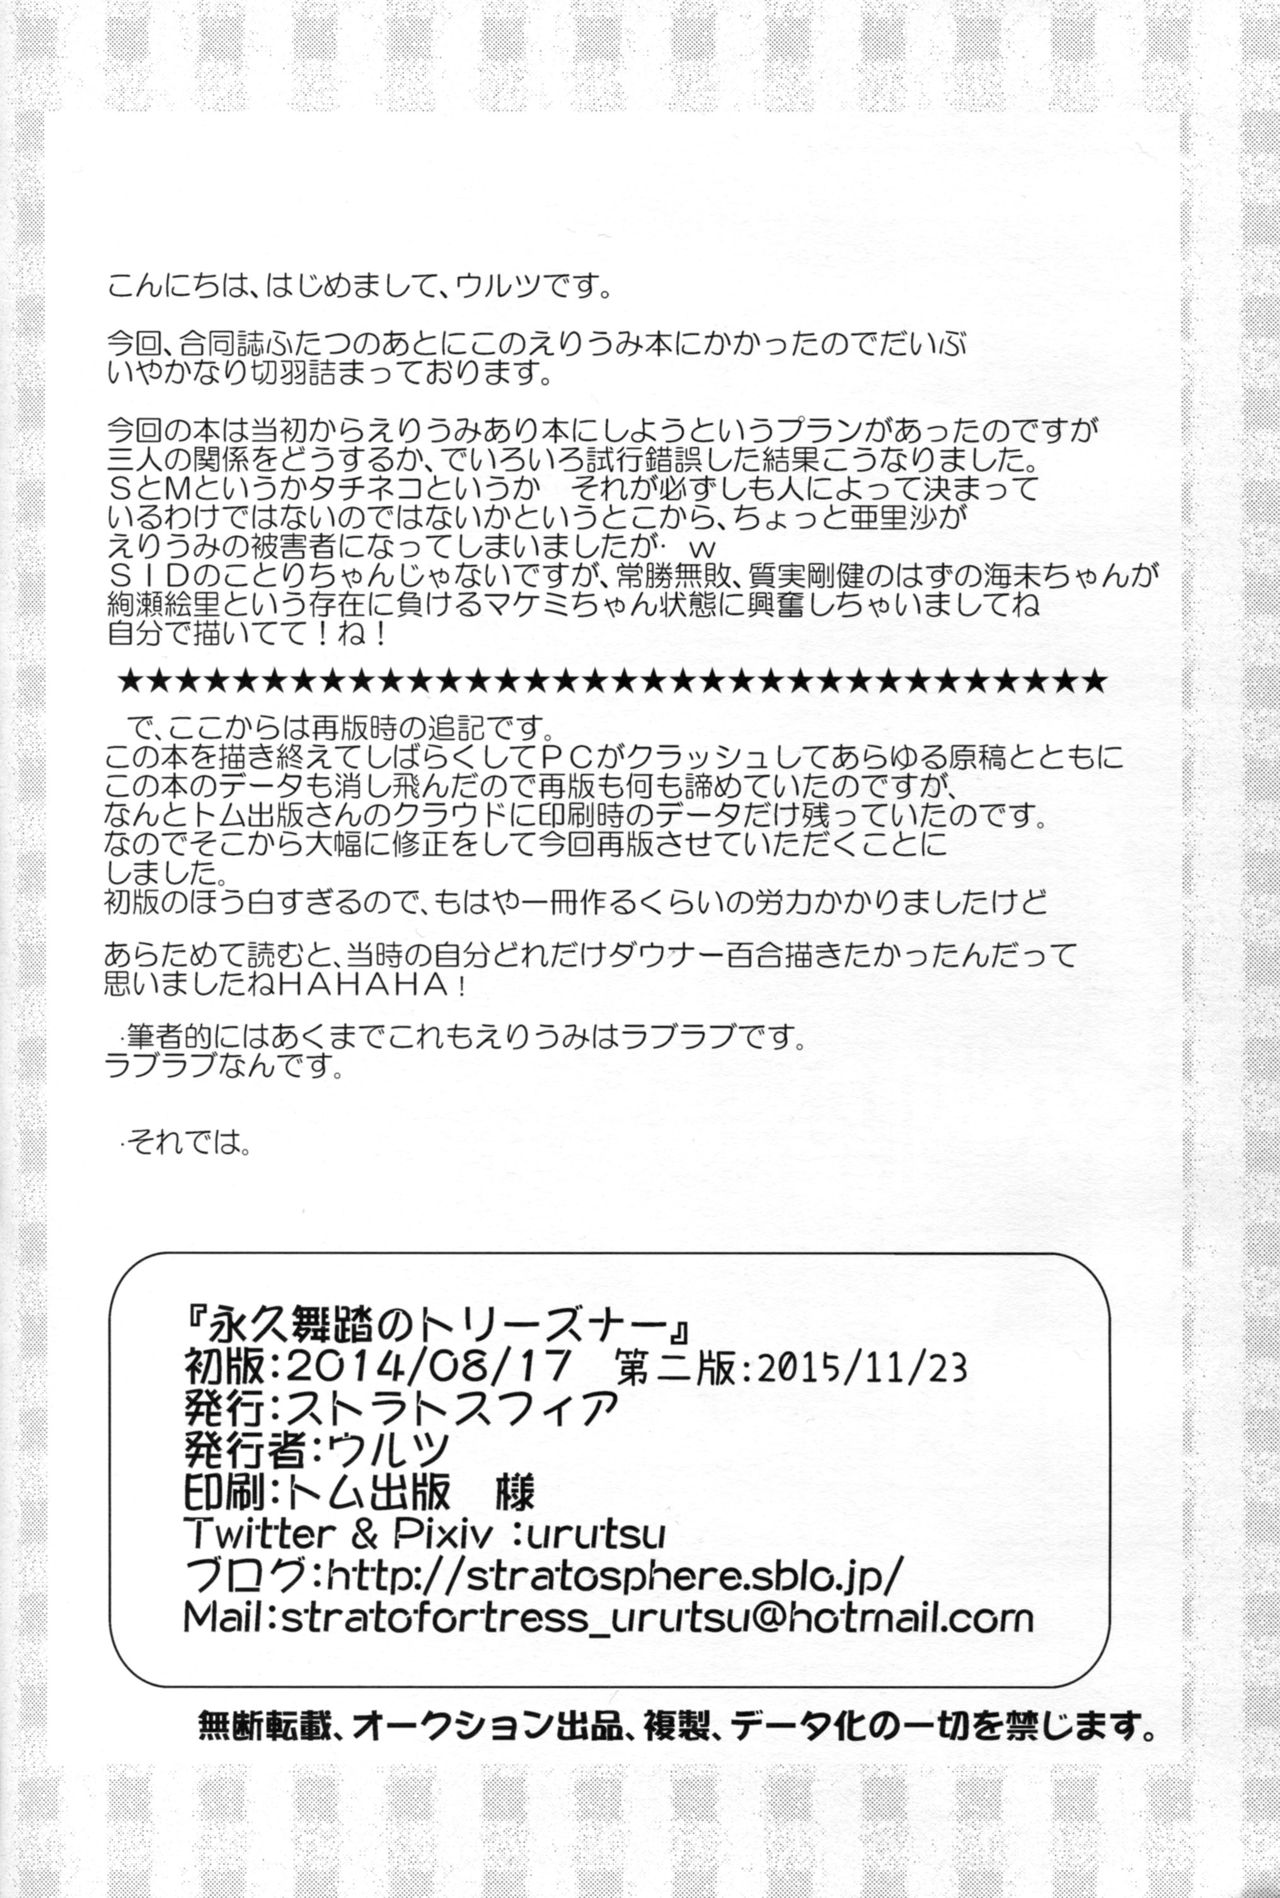 (Bokura no Love Live! 10) [StratoSphere (Urutsu)] Eikyuu Butou no Treasoner (Love Live!) (僕らのラブライブ! 10) [ストラトスフィア (ウルツ)] 永久舞踏のトリーズナー (ラブライブ!)